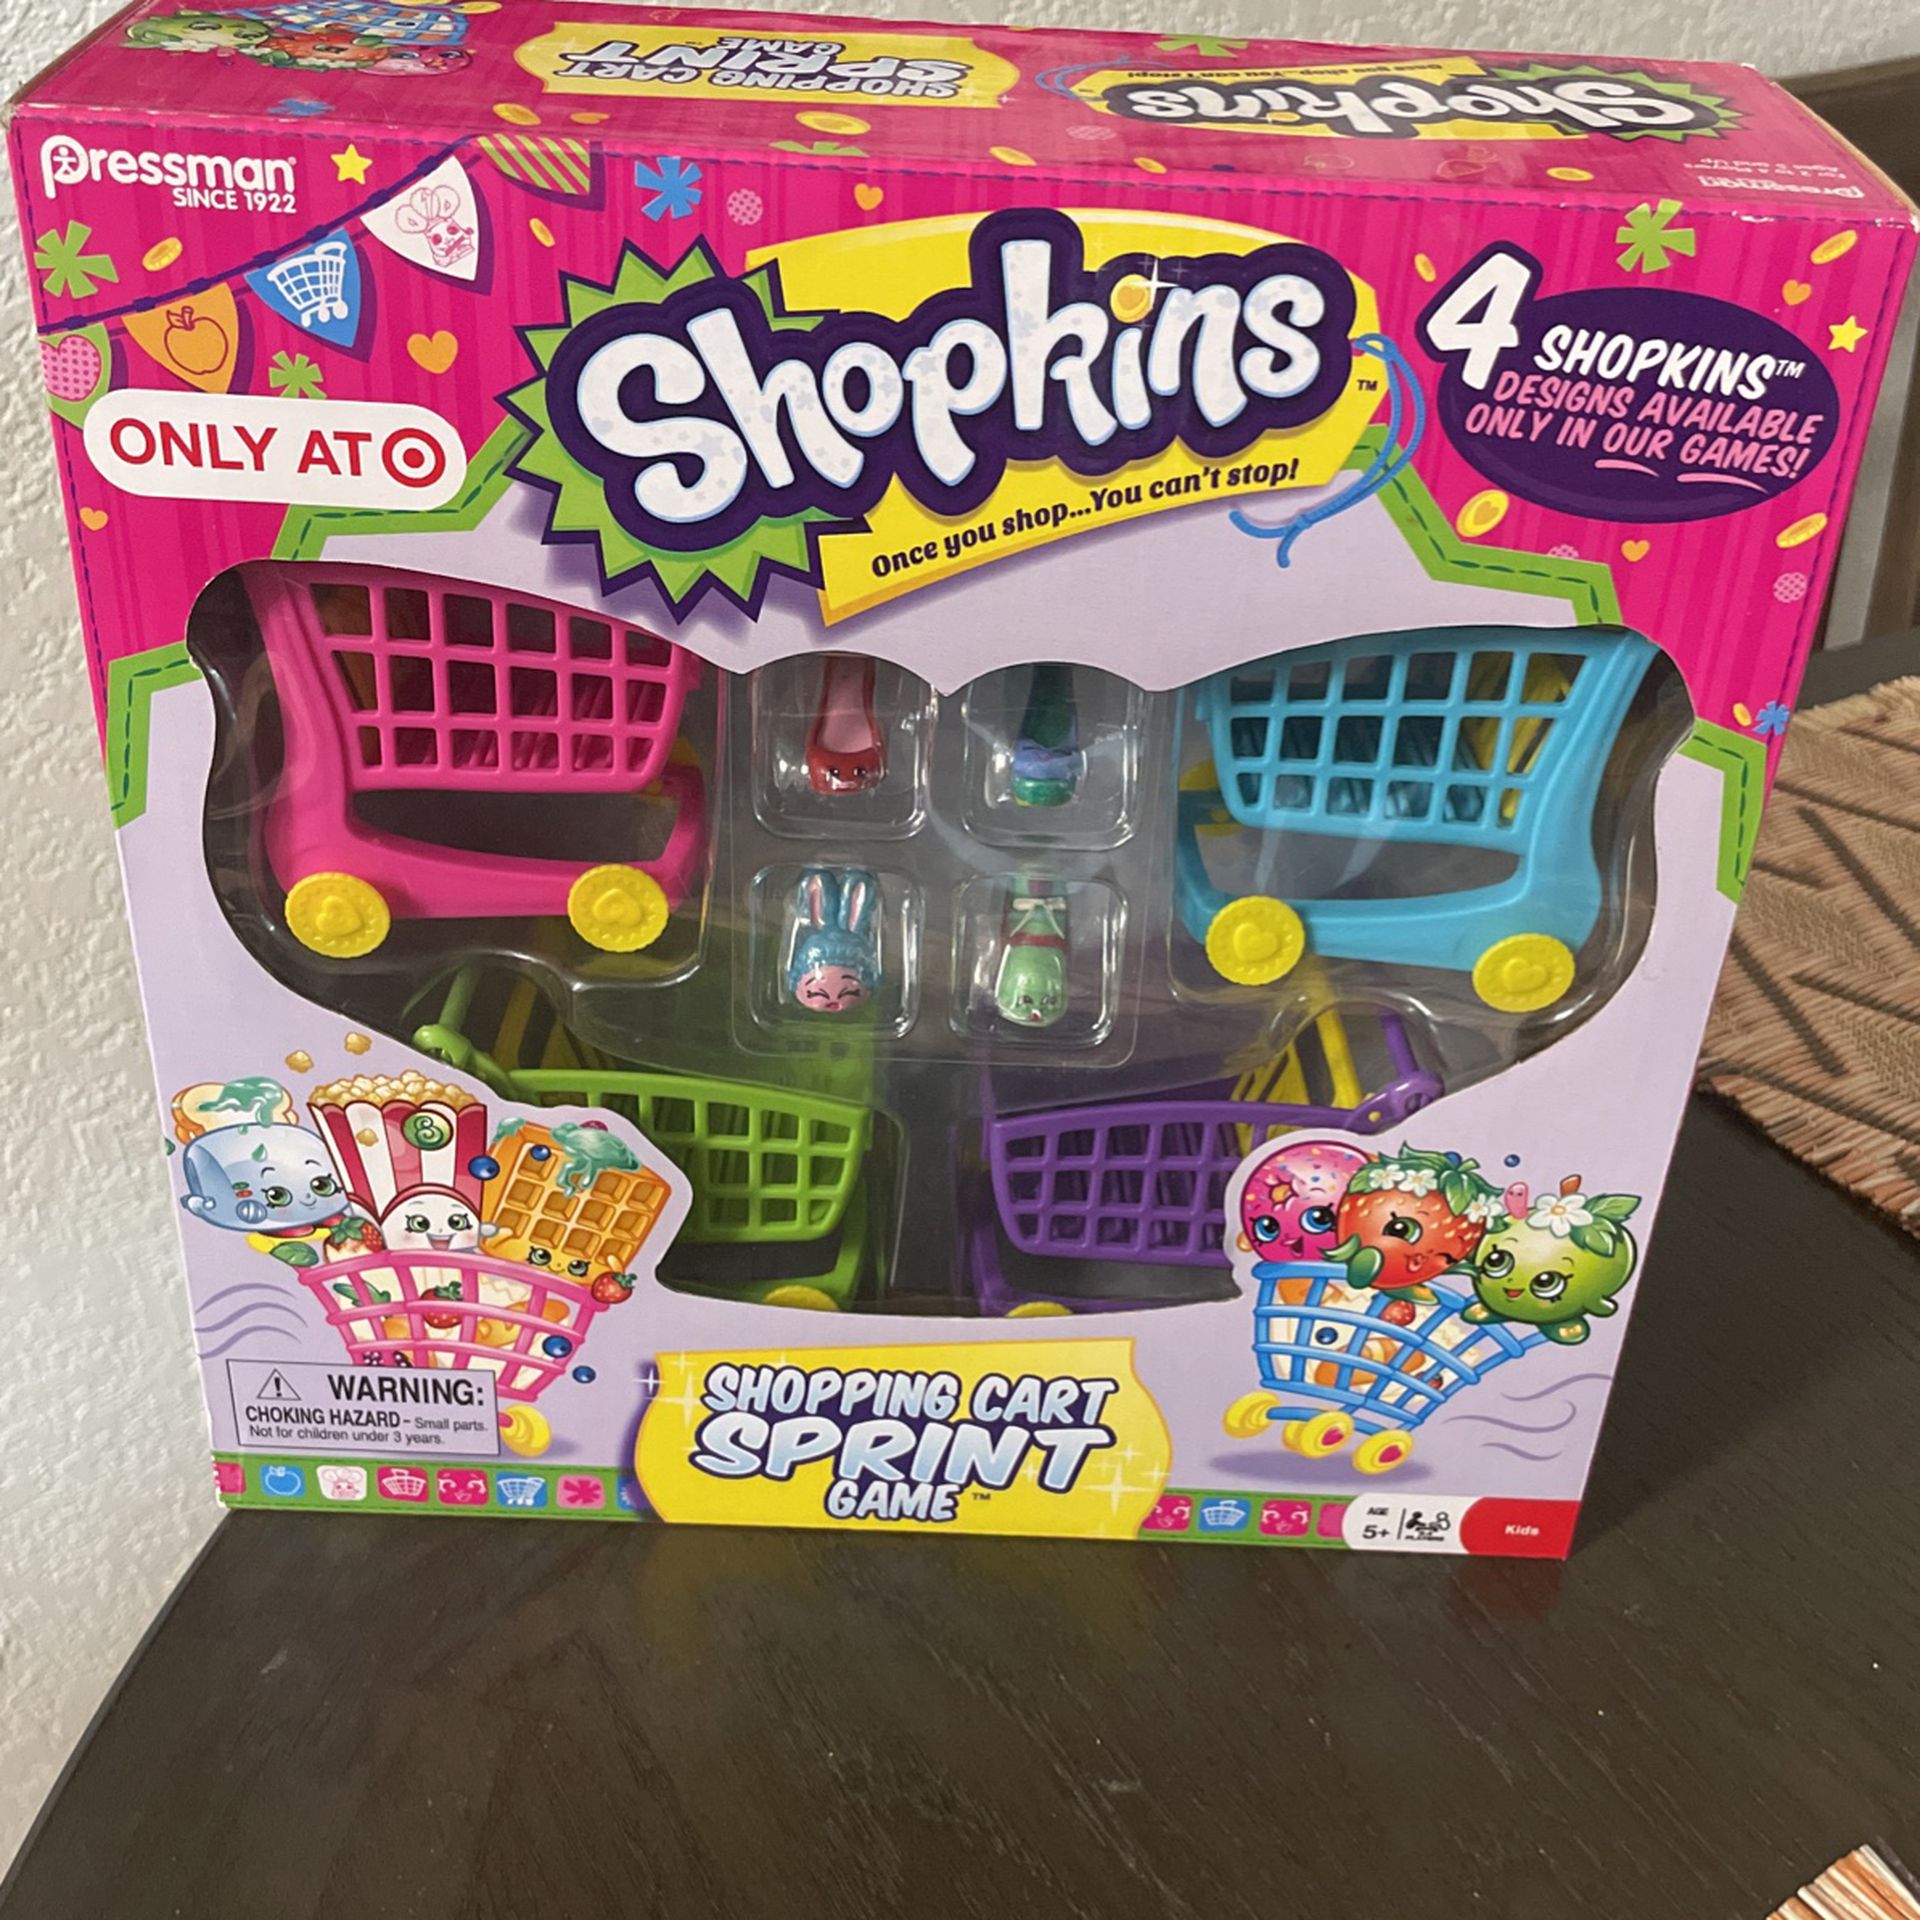 Shopkins Shopping Cart Sprint Game